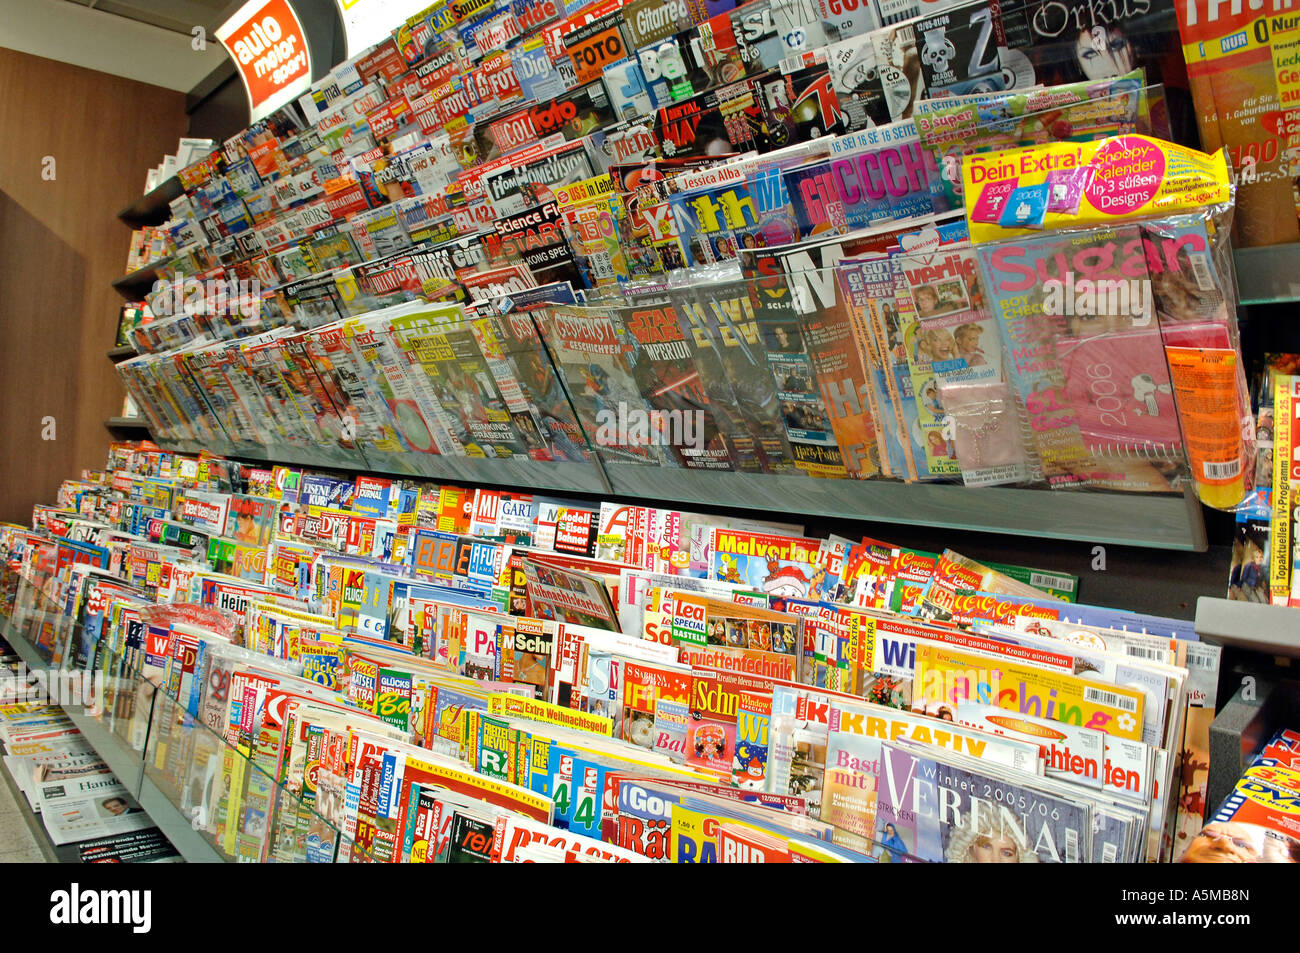 Zeitungsladen Zeitungen Zeitschriften Kiosk Innenaufnahme Einkaufszeile Supermarkt Regale newspaper newspapers magazines Stock Photo